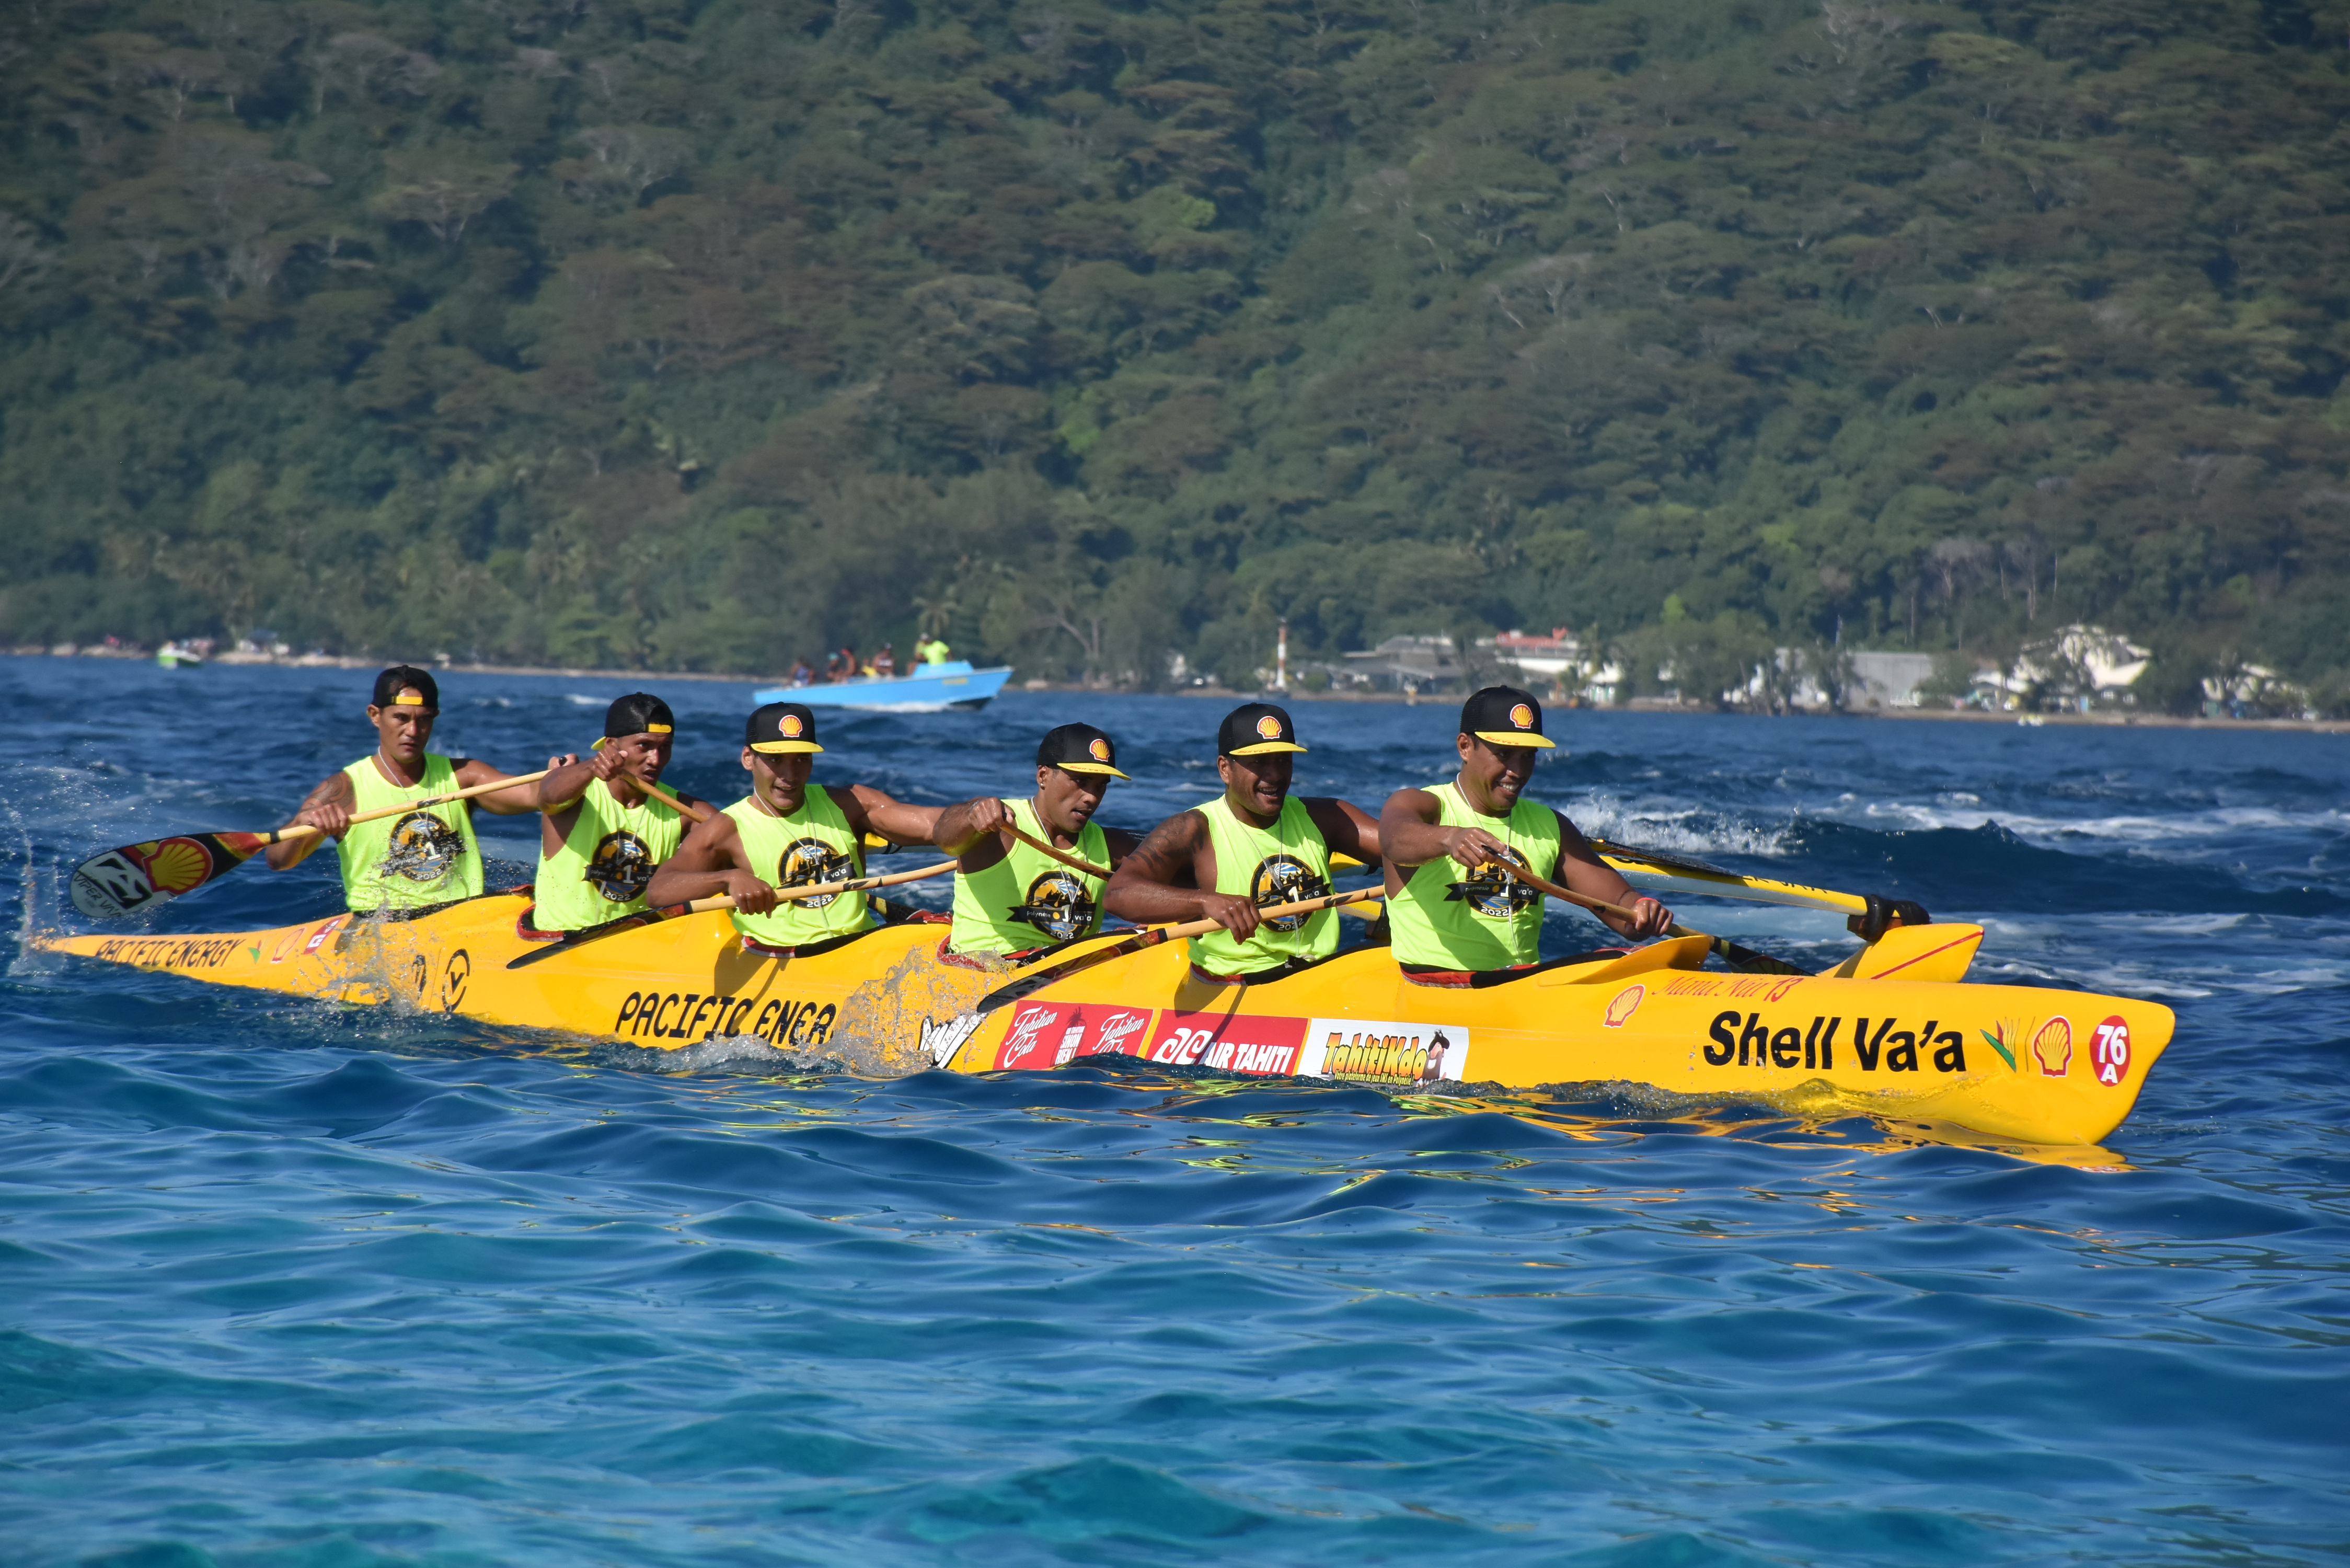 Il s'agit de la troisième victoire de suite pour Shell Va'a au Marathon Polynésie la 1ère. Au total le club au coquillage s'est imposé 12 fois sur cette course.